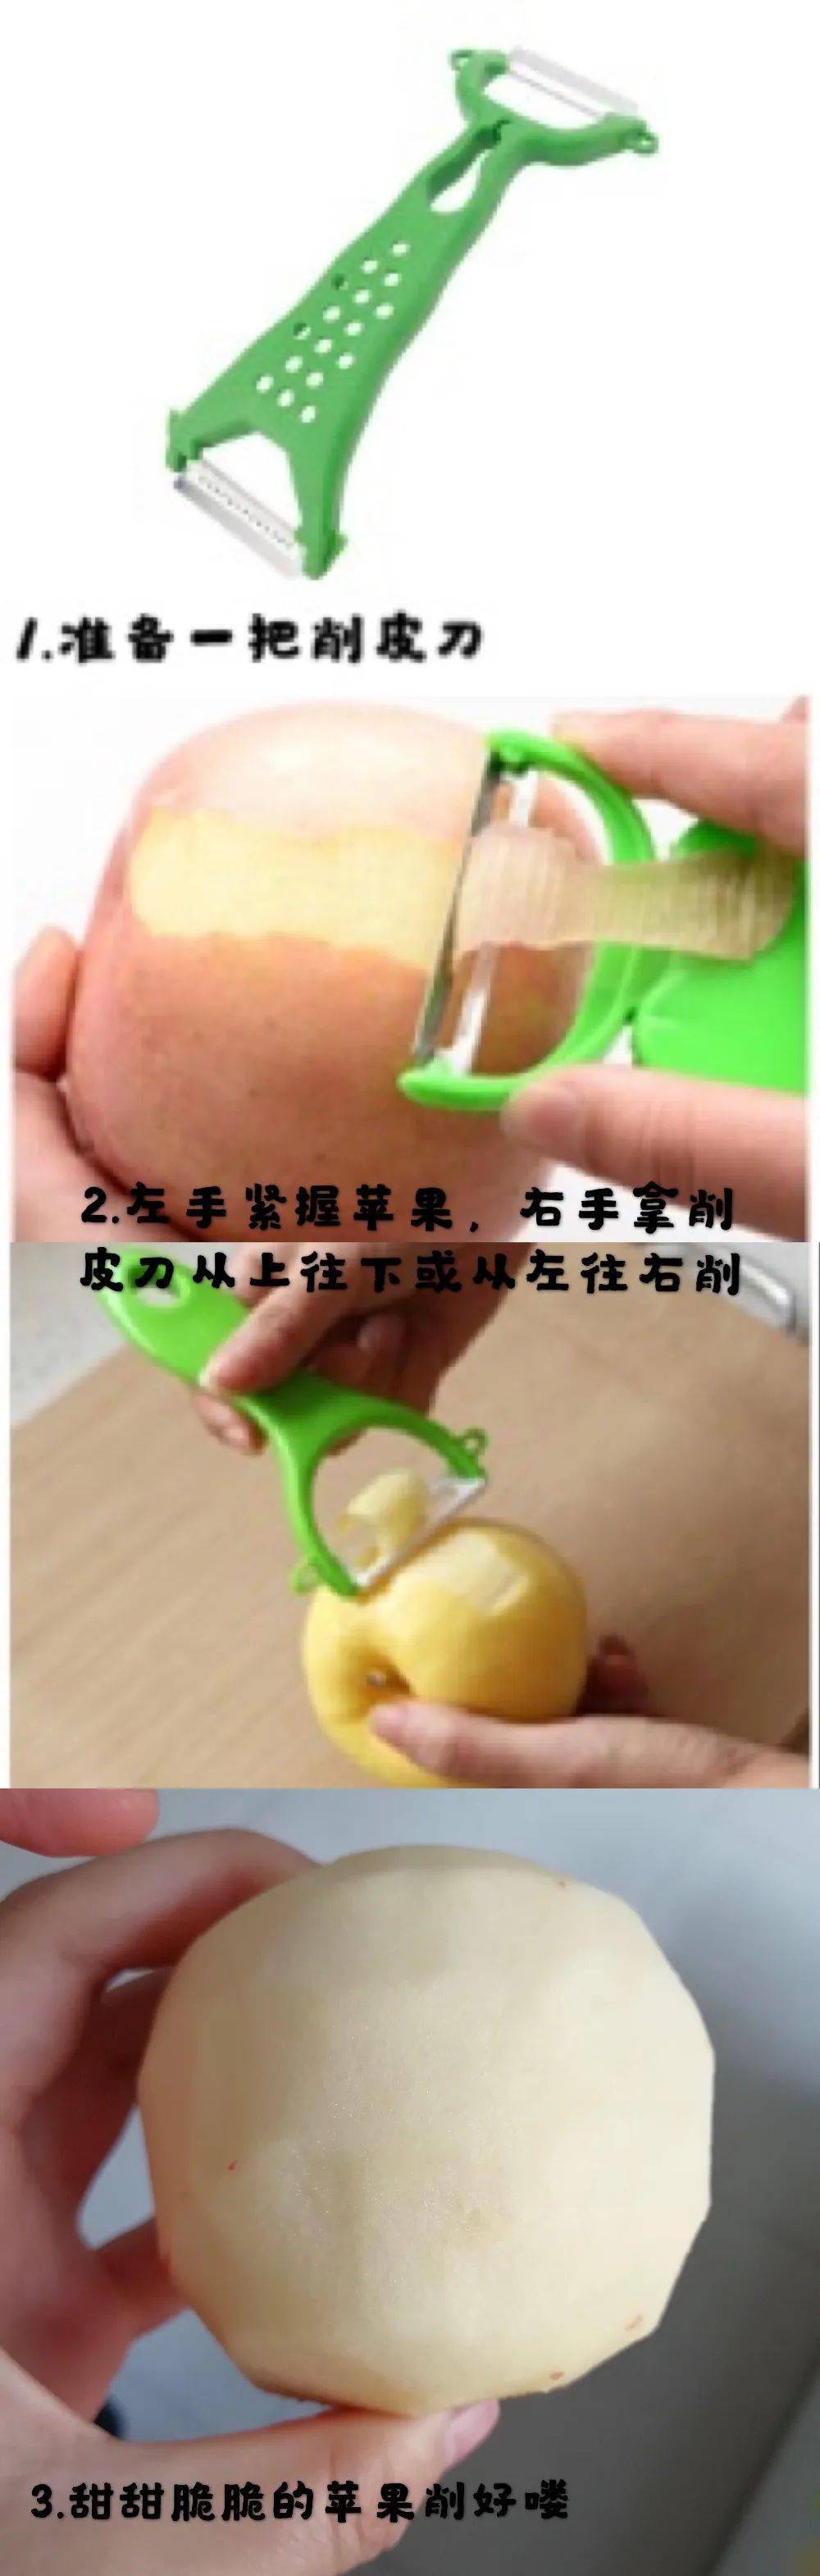 活动准备:削皮刀,苹果 活动内容: 取一苹果先洗净,准备一把削皮刀.